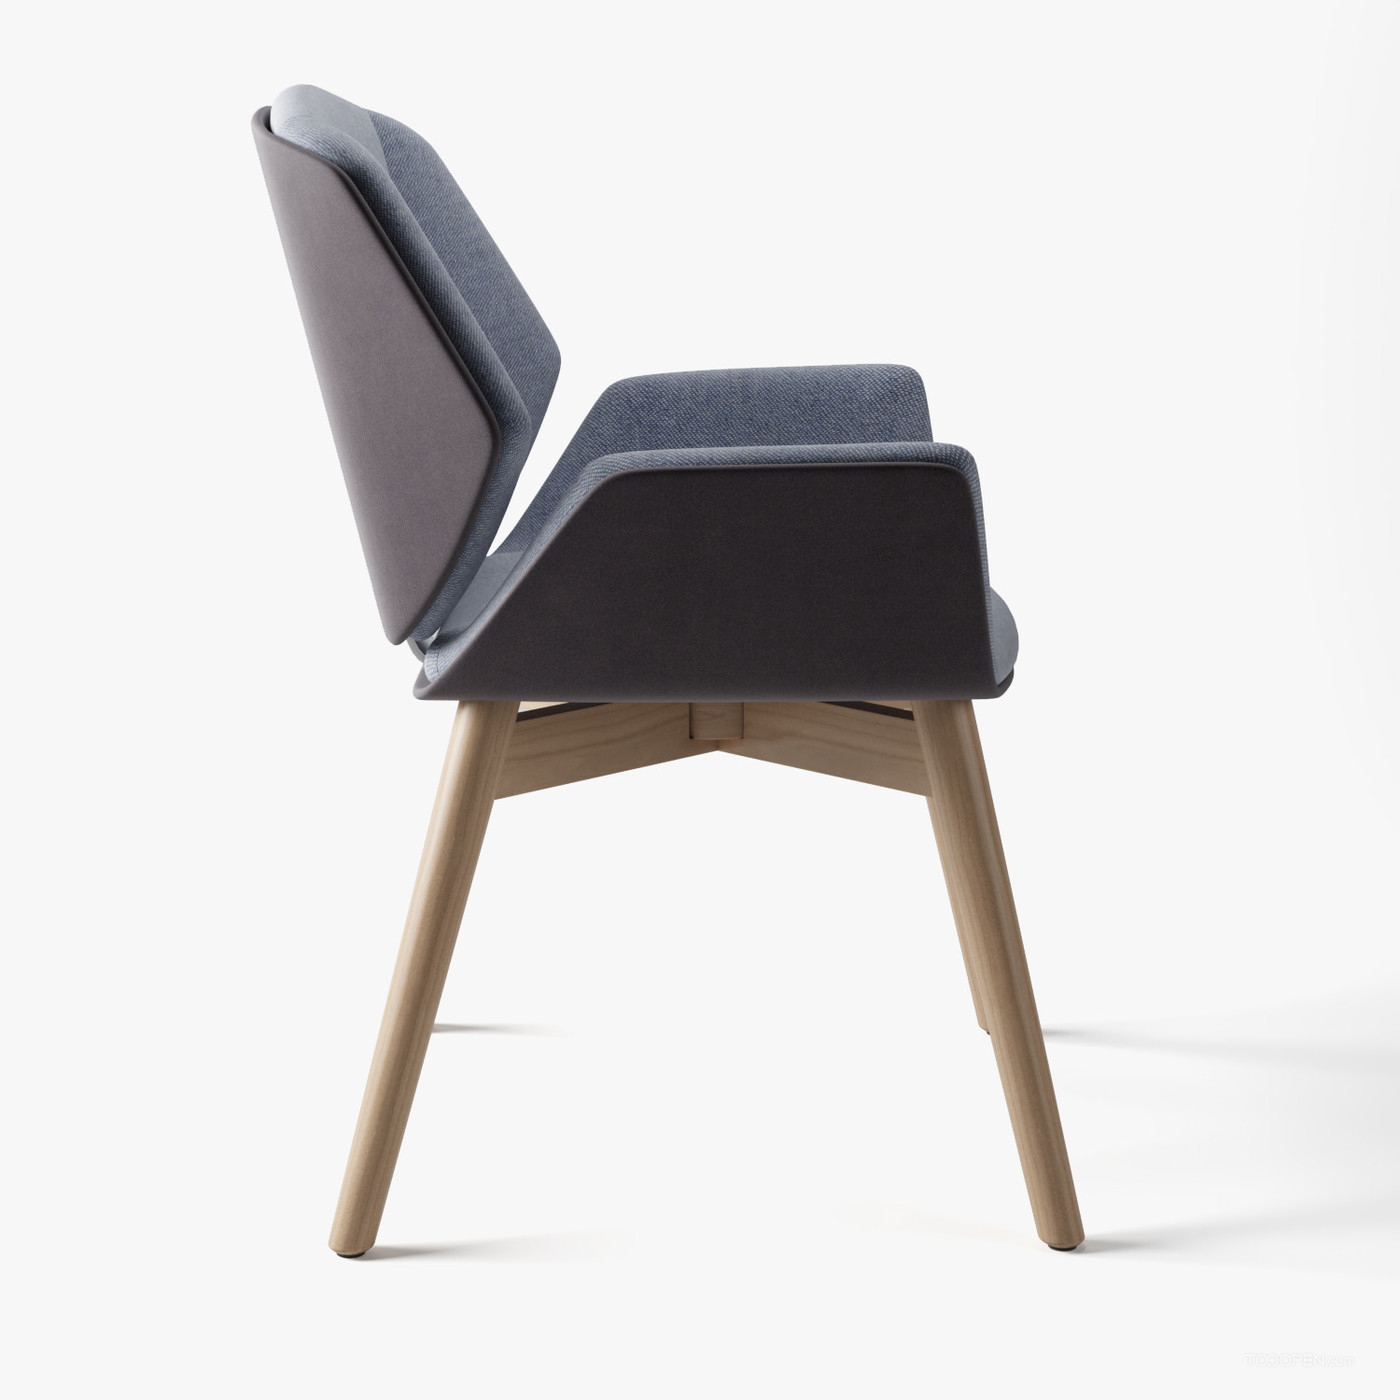 时尚简约风格的椅子家具设计欣赏-06